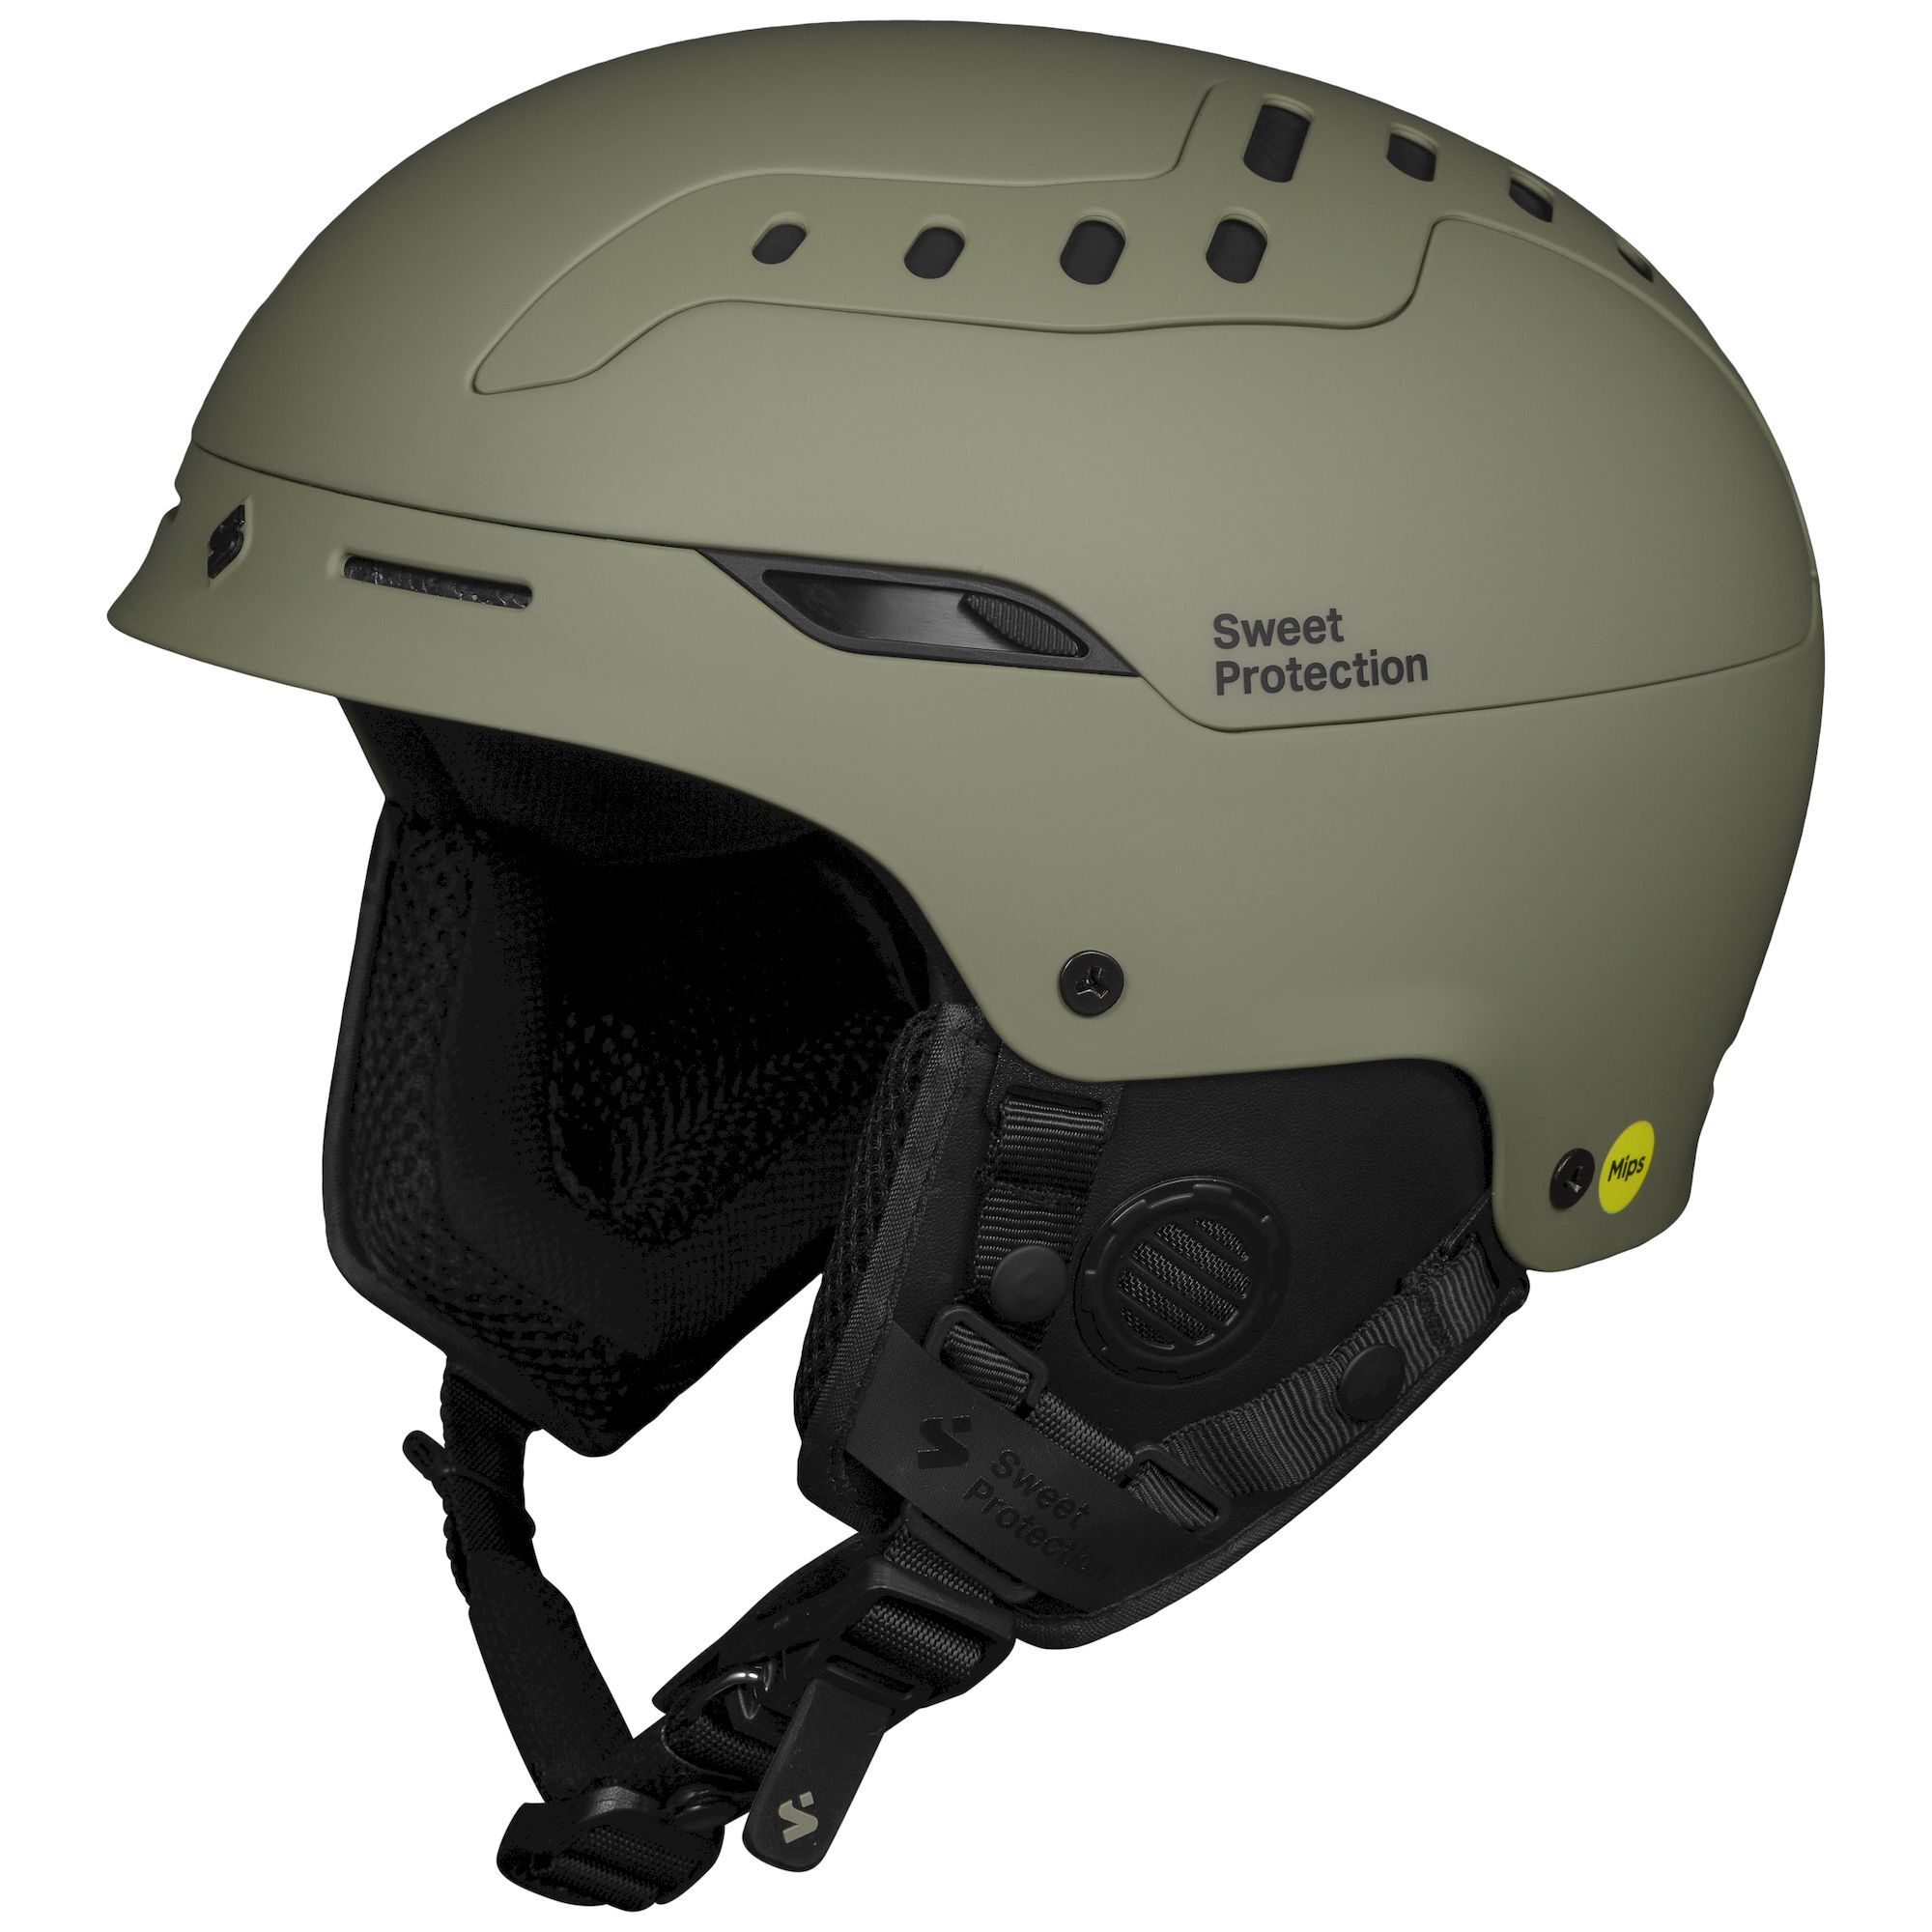 Sweet Protection Switcher MIPS - Ski helmet - Men's